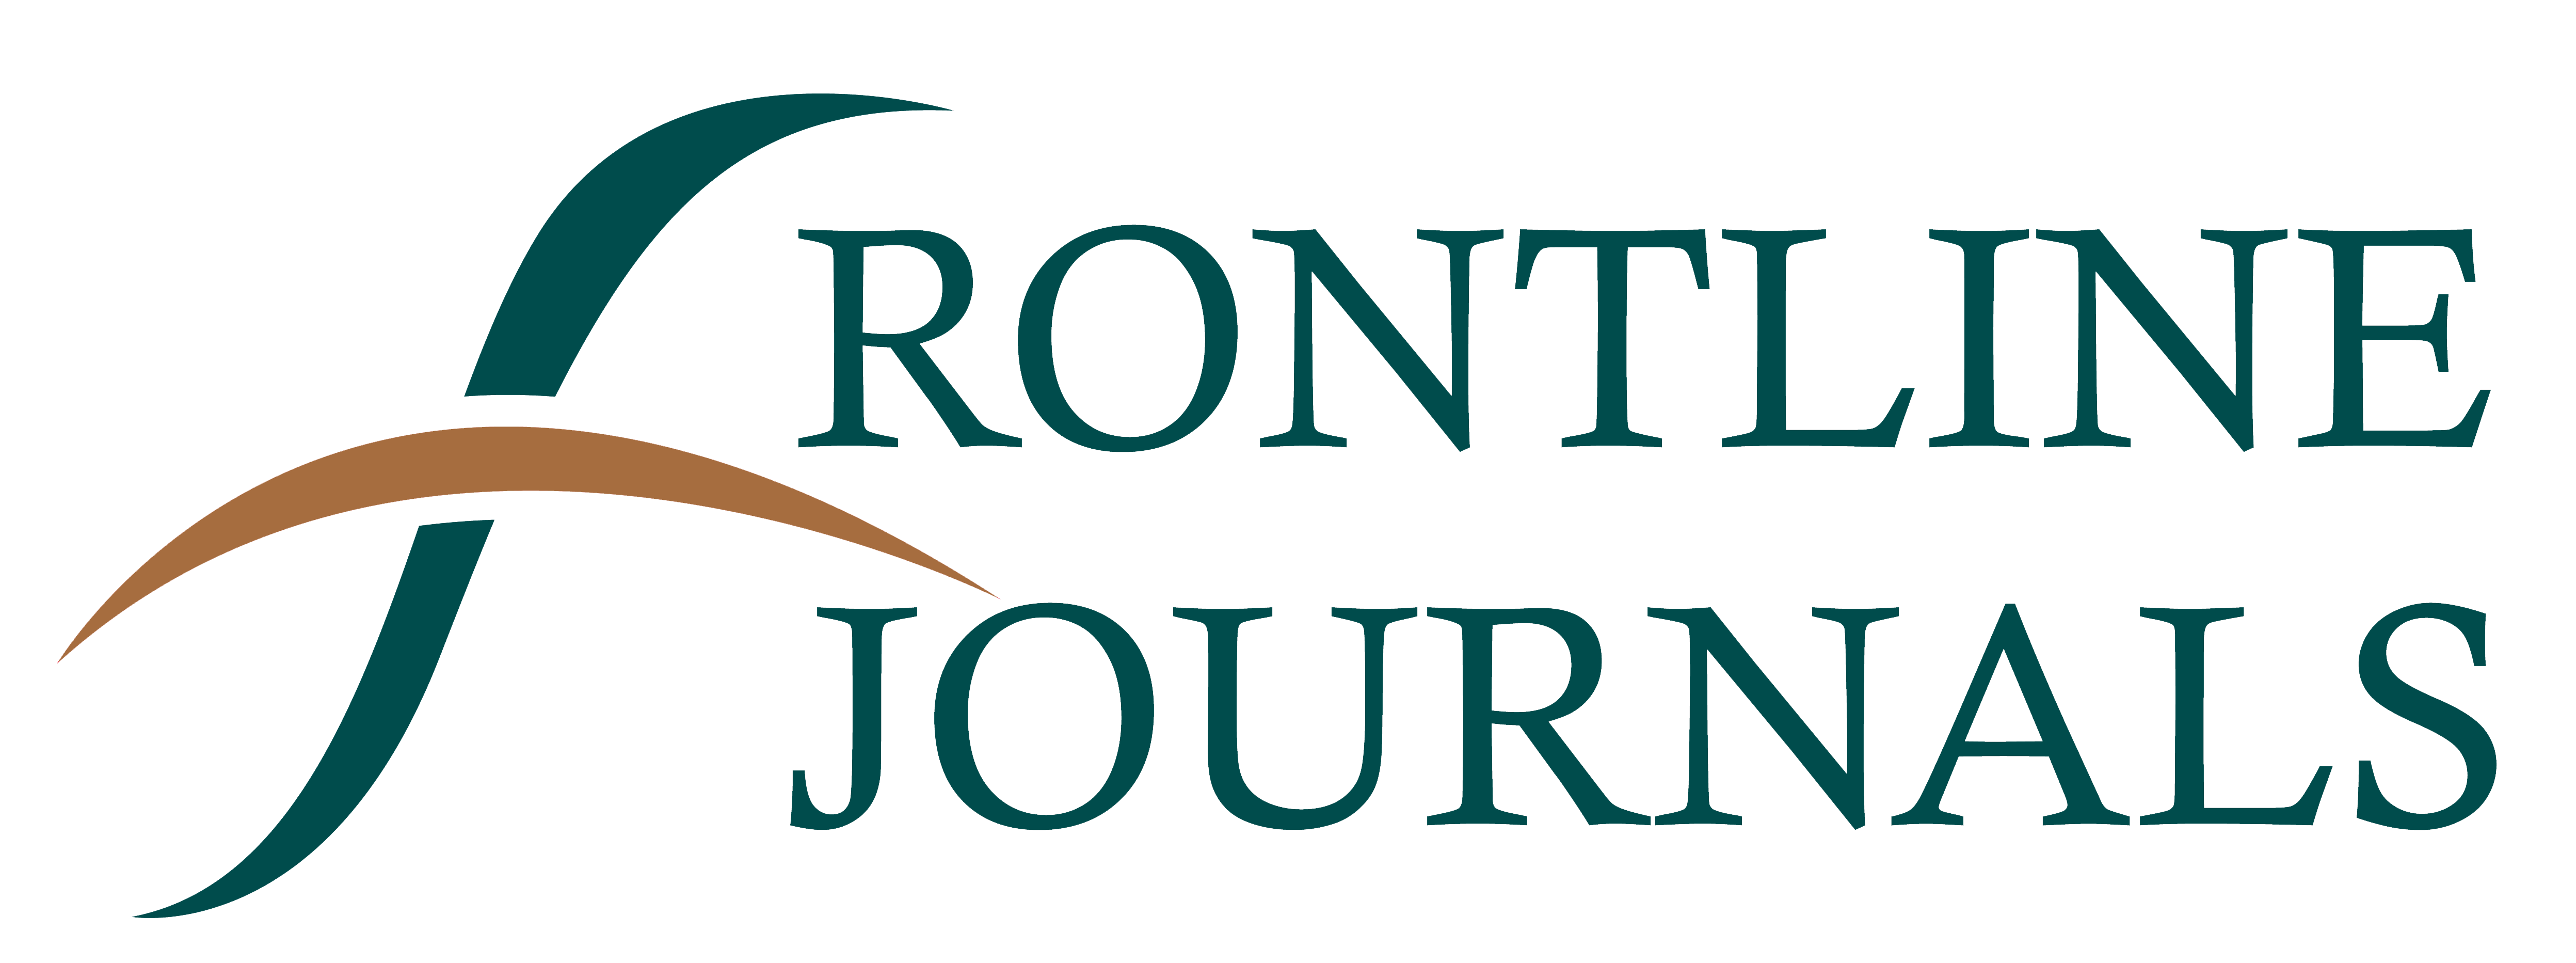 frontline_journals_top_indexed_journal